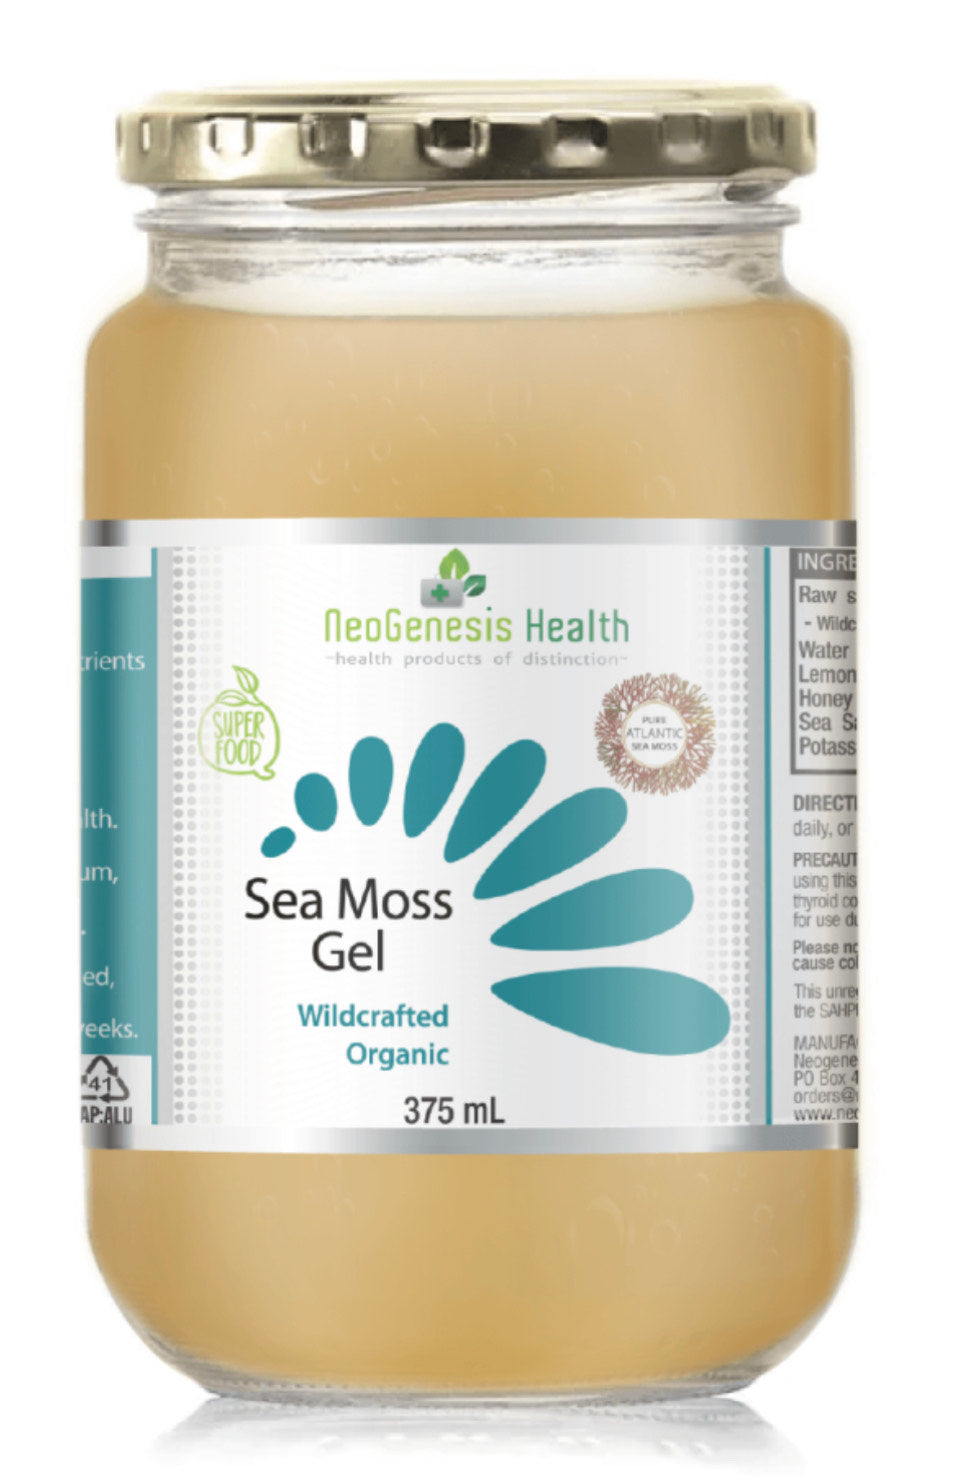 Neogenesis Health Wildcrafted Organic Sea Moss Gel